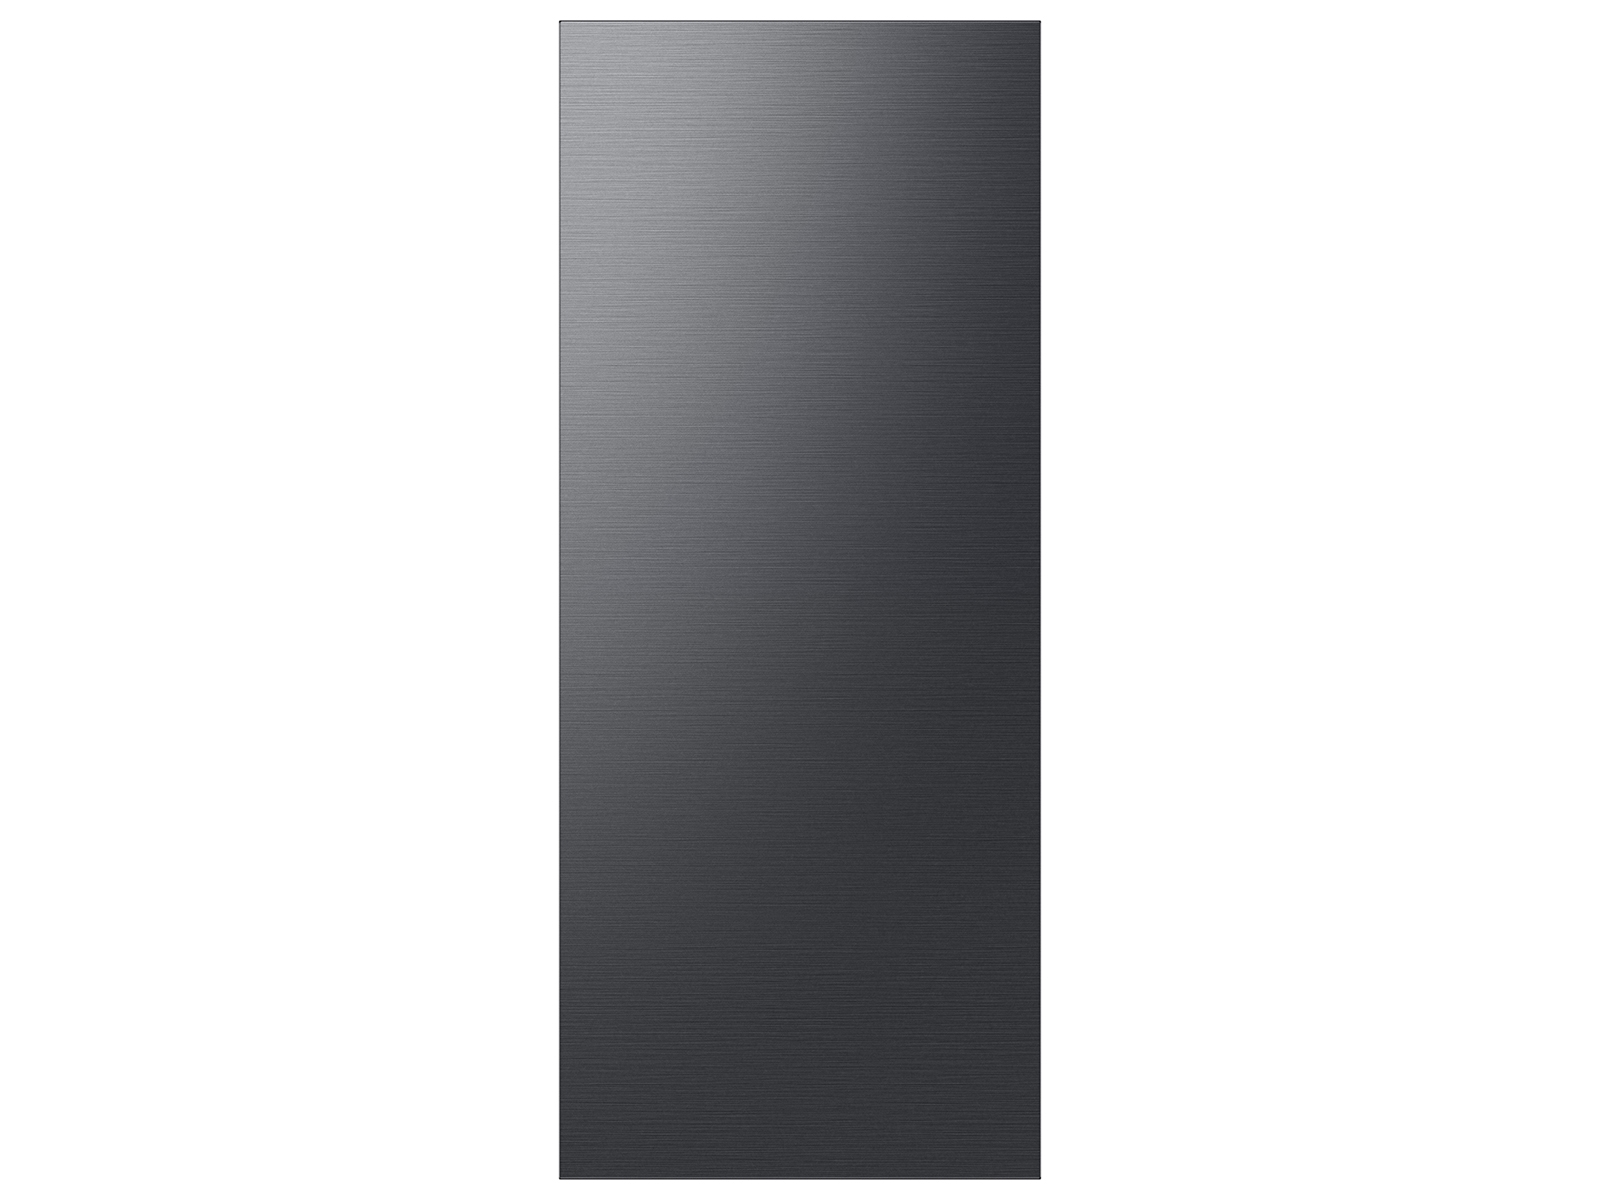 Bespoke 3-Door French Door Refrigerator Panel in Stainless Steel - Top  Panel Home Appliances Accessories - RA-F18DU3QL/AA